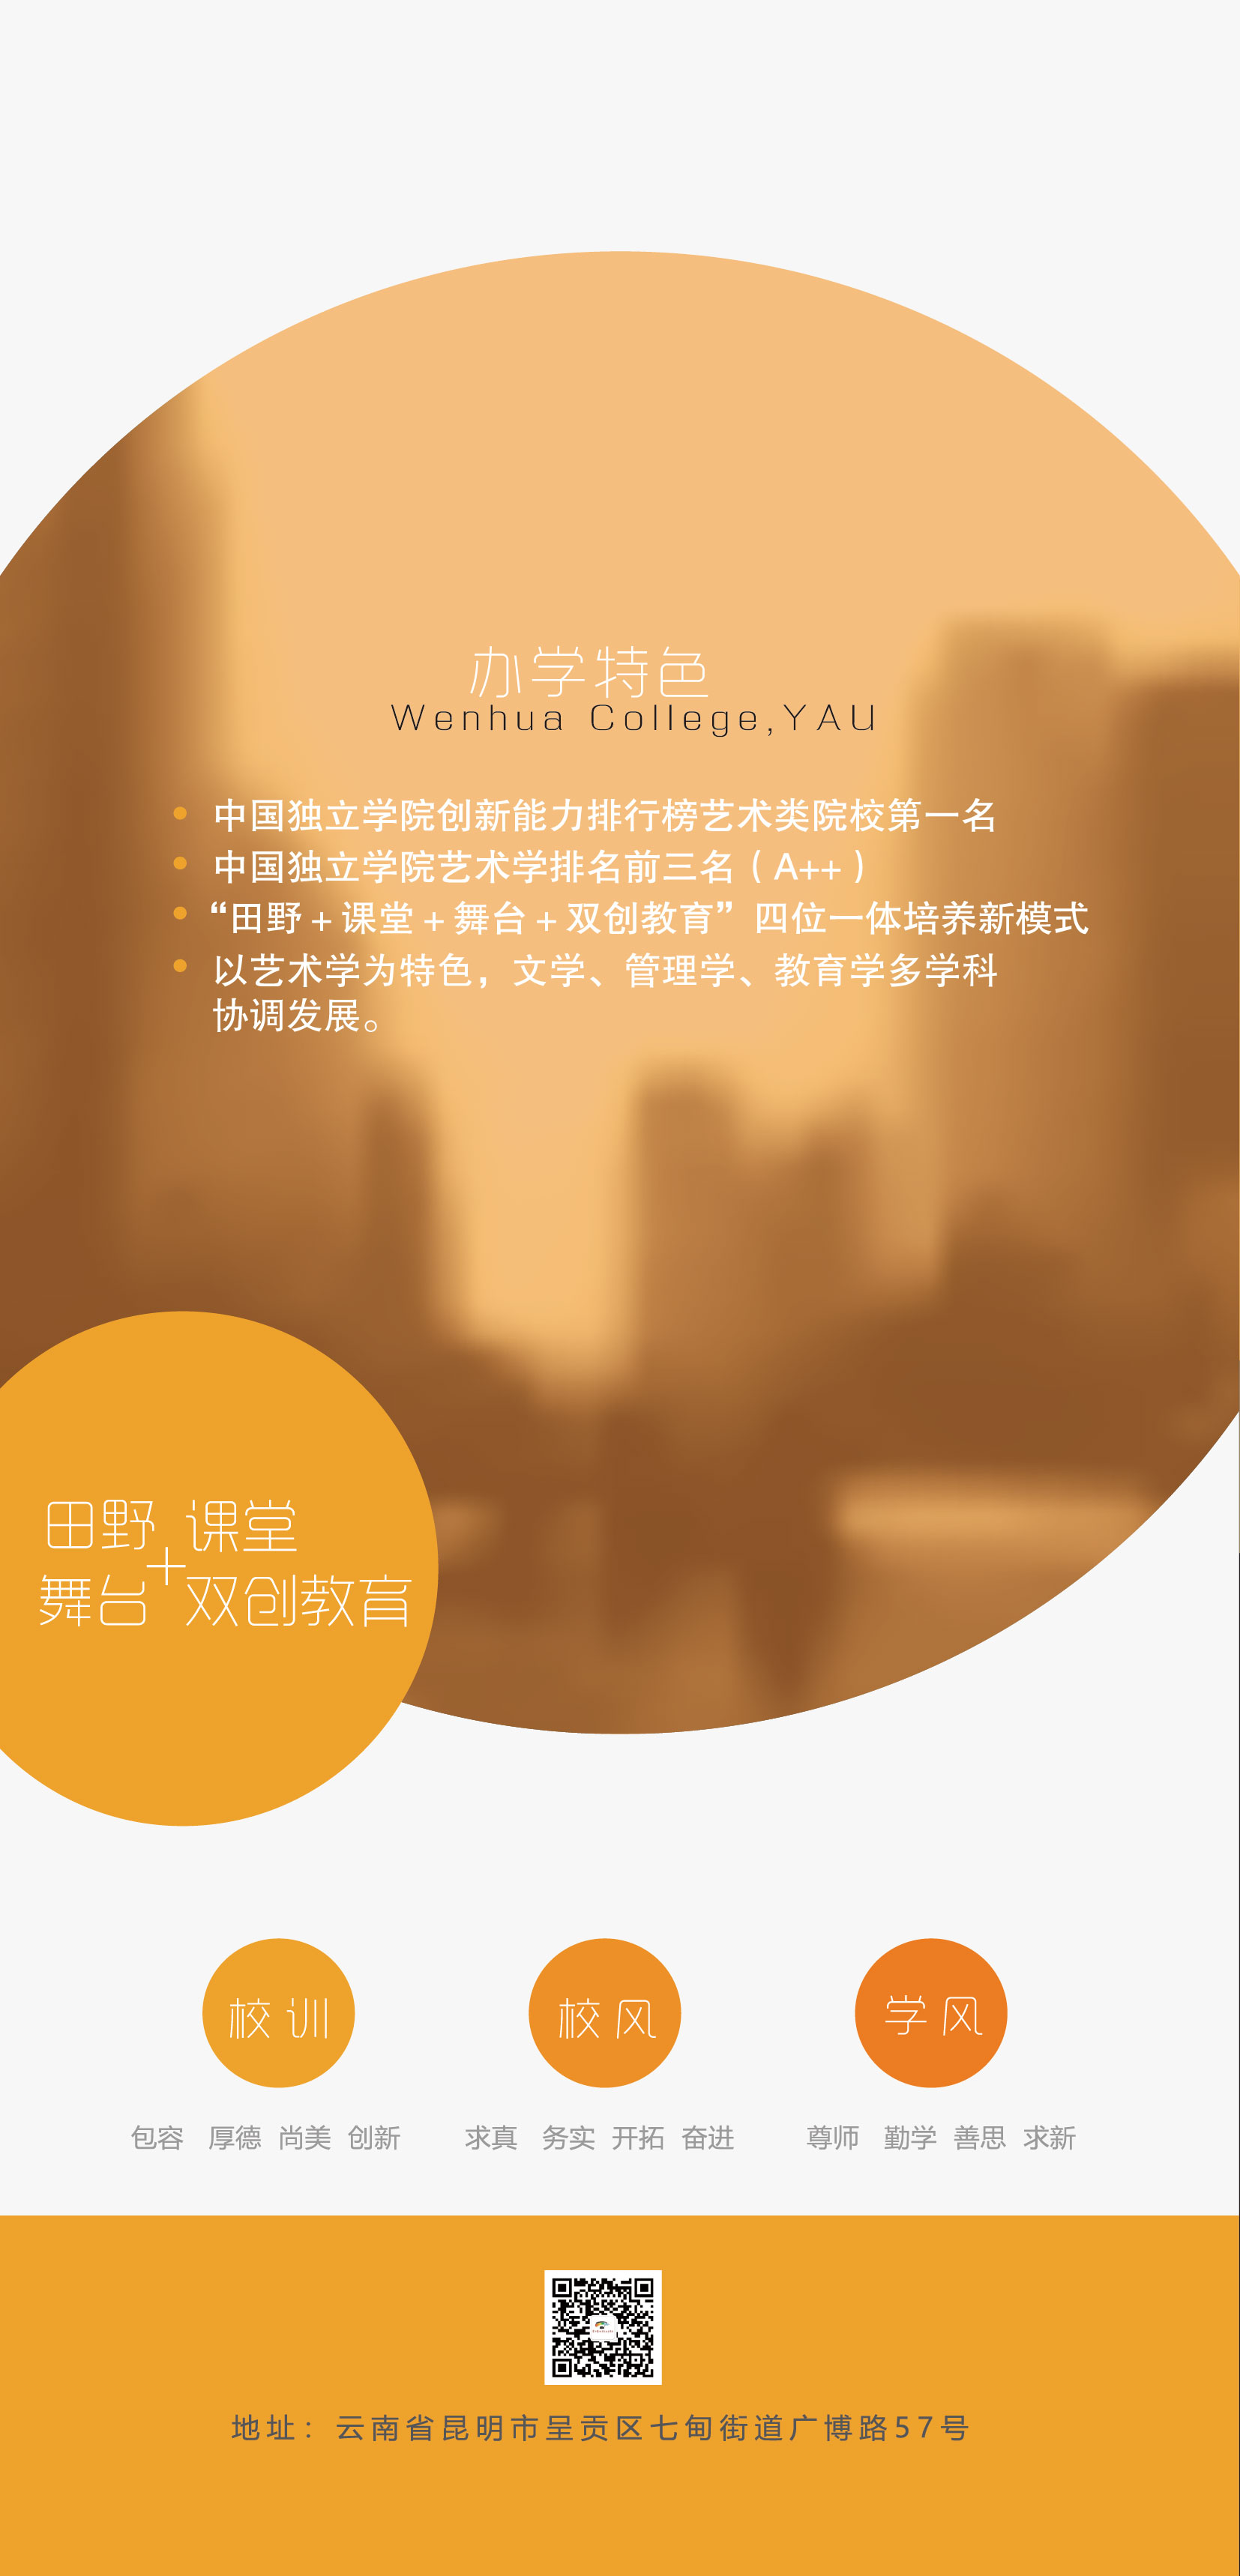 云南艺术学院文华学院2021年招生简章已经发布，报考该院校的同学快和启慧小编一起来了解一下吧！